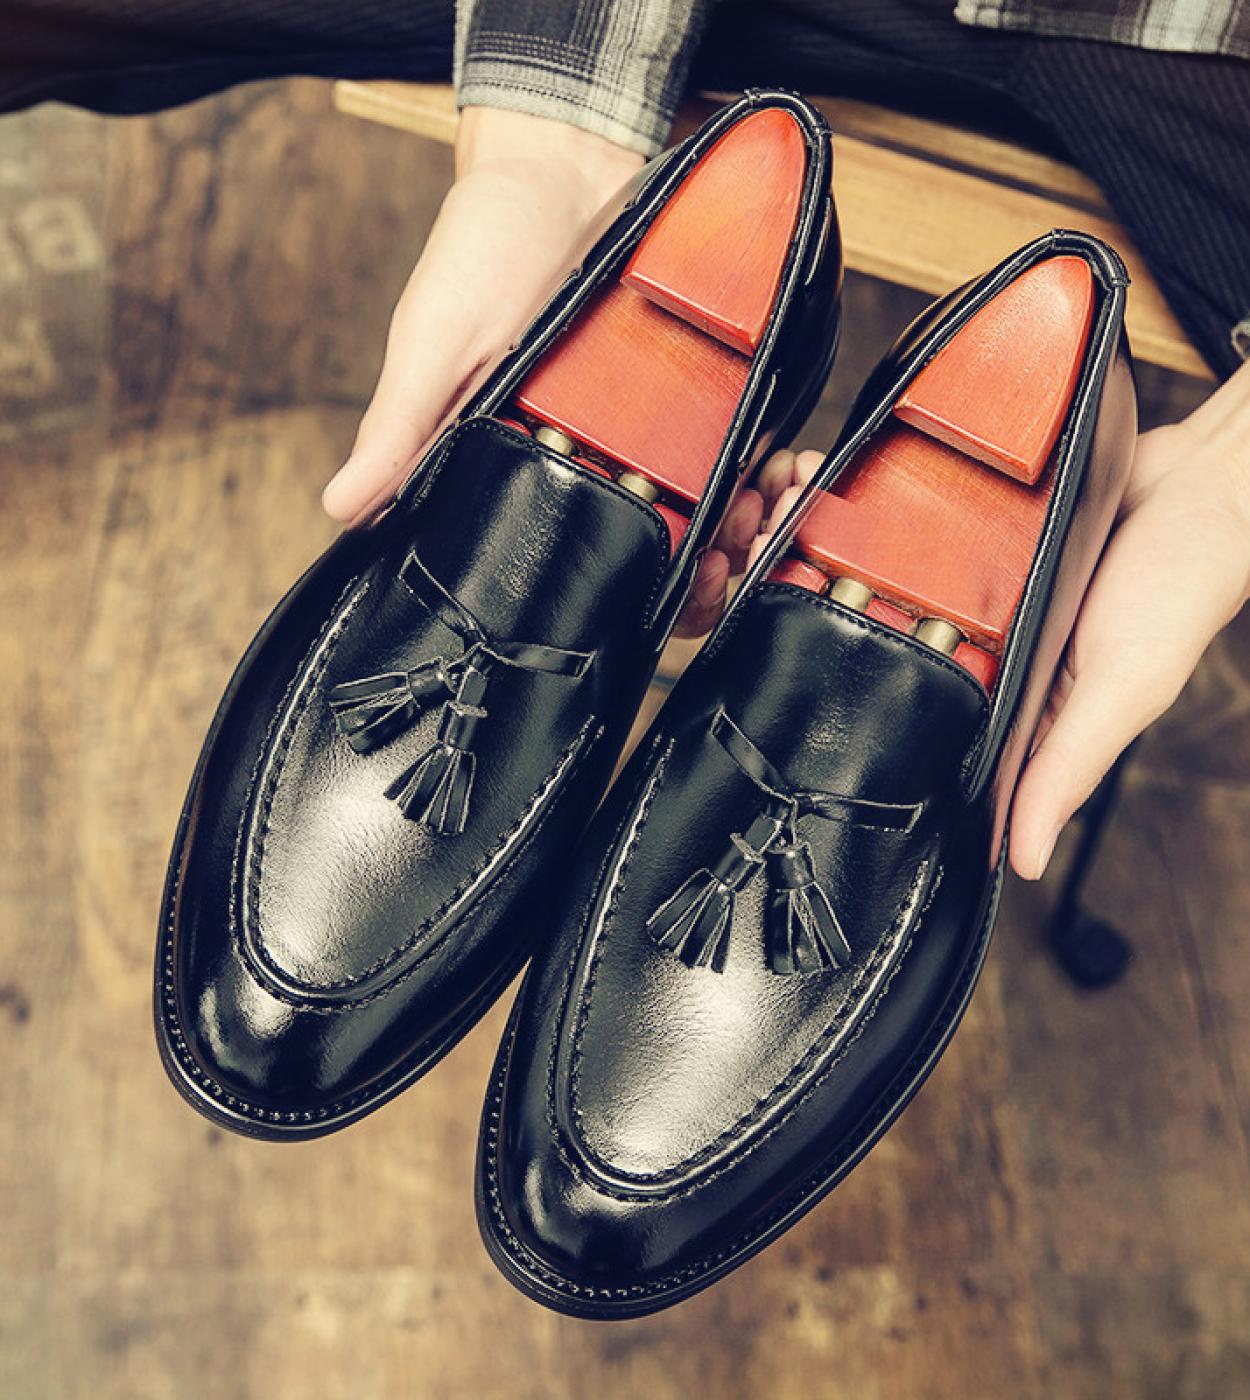 أحذية رجالي رسمية أحذية جلدية إيطالية أحذية رجالي بدون كعب مقاس كبير مصمم رسمي أسود للزفاف 38 46